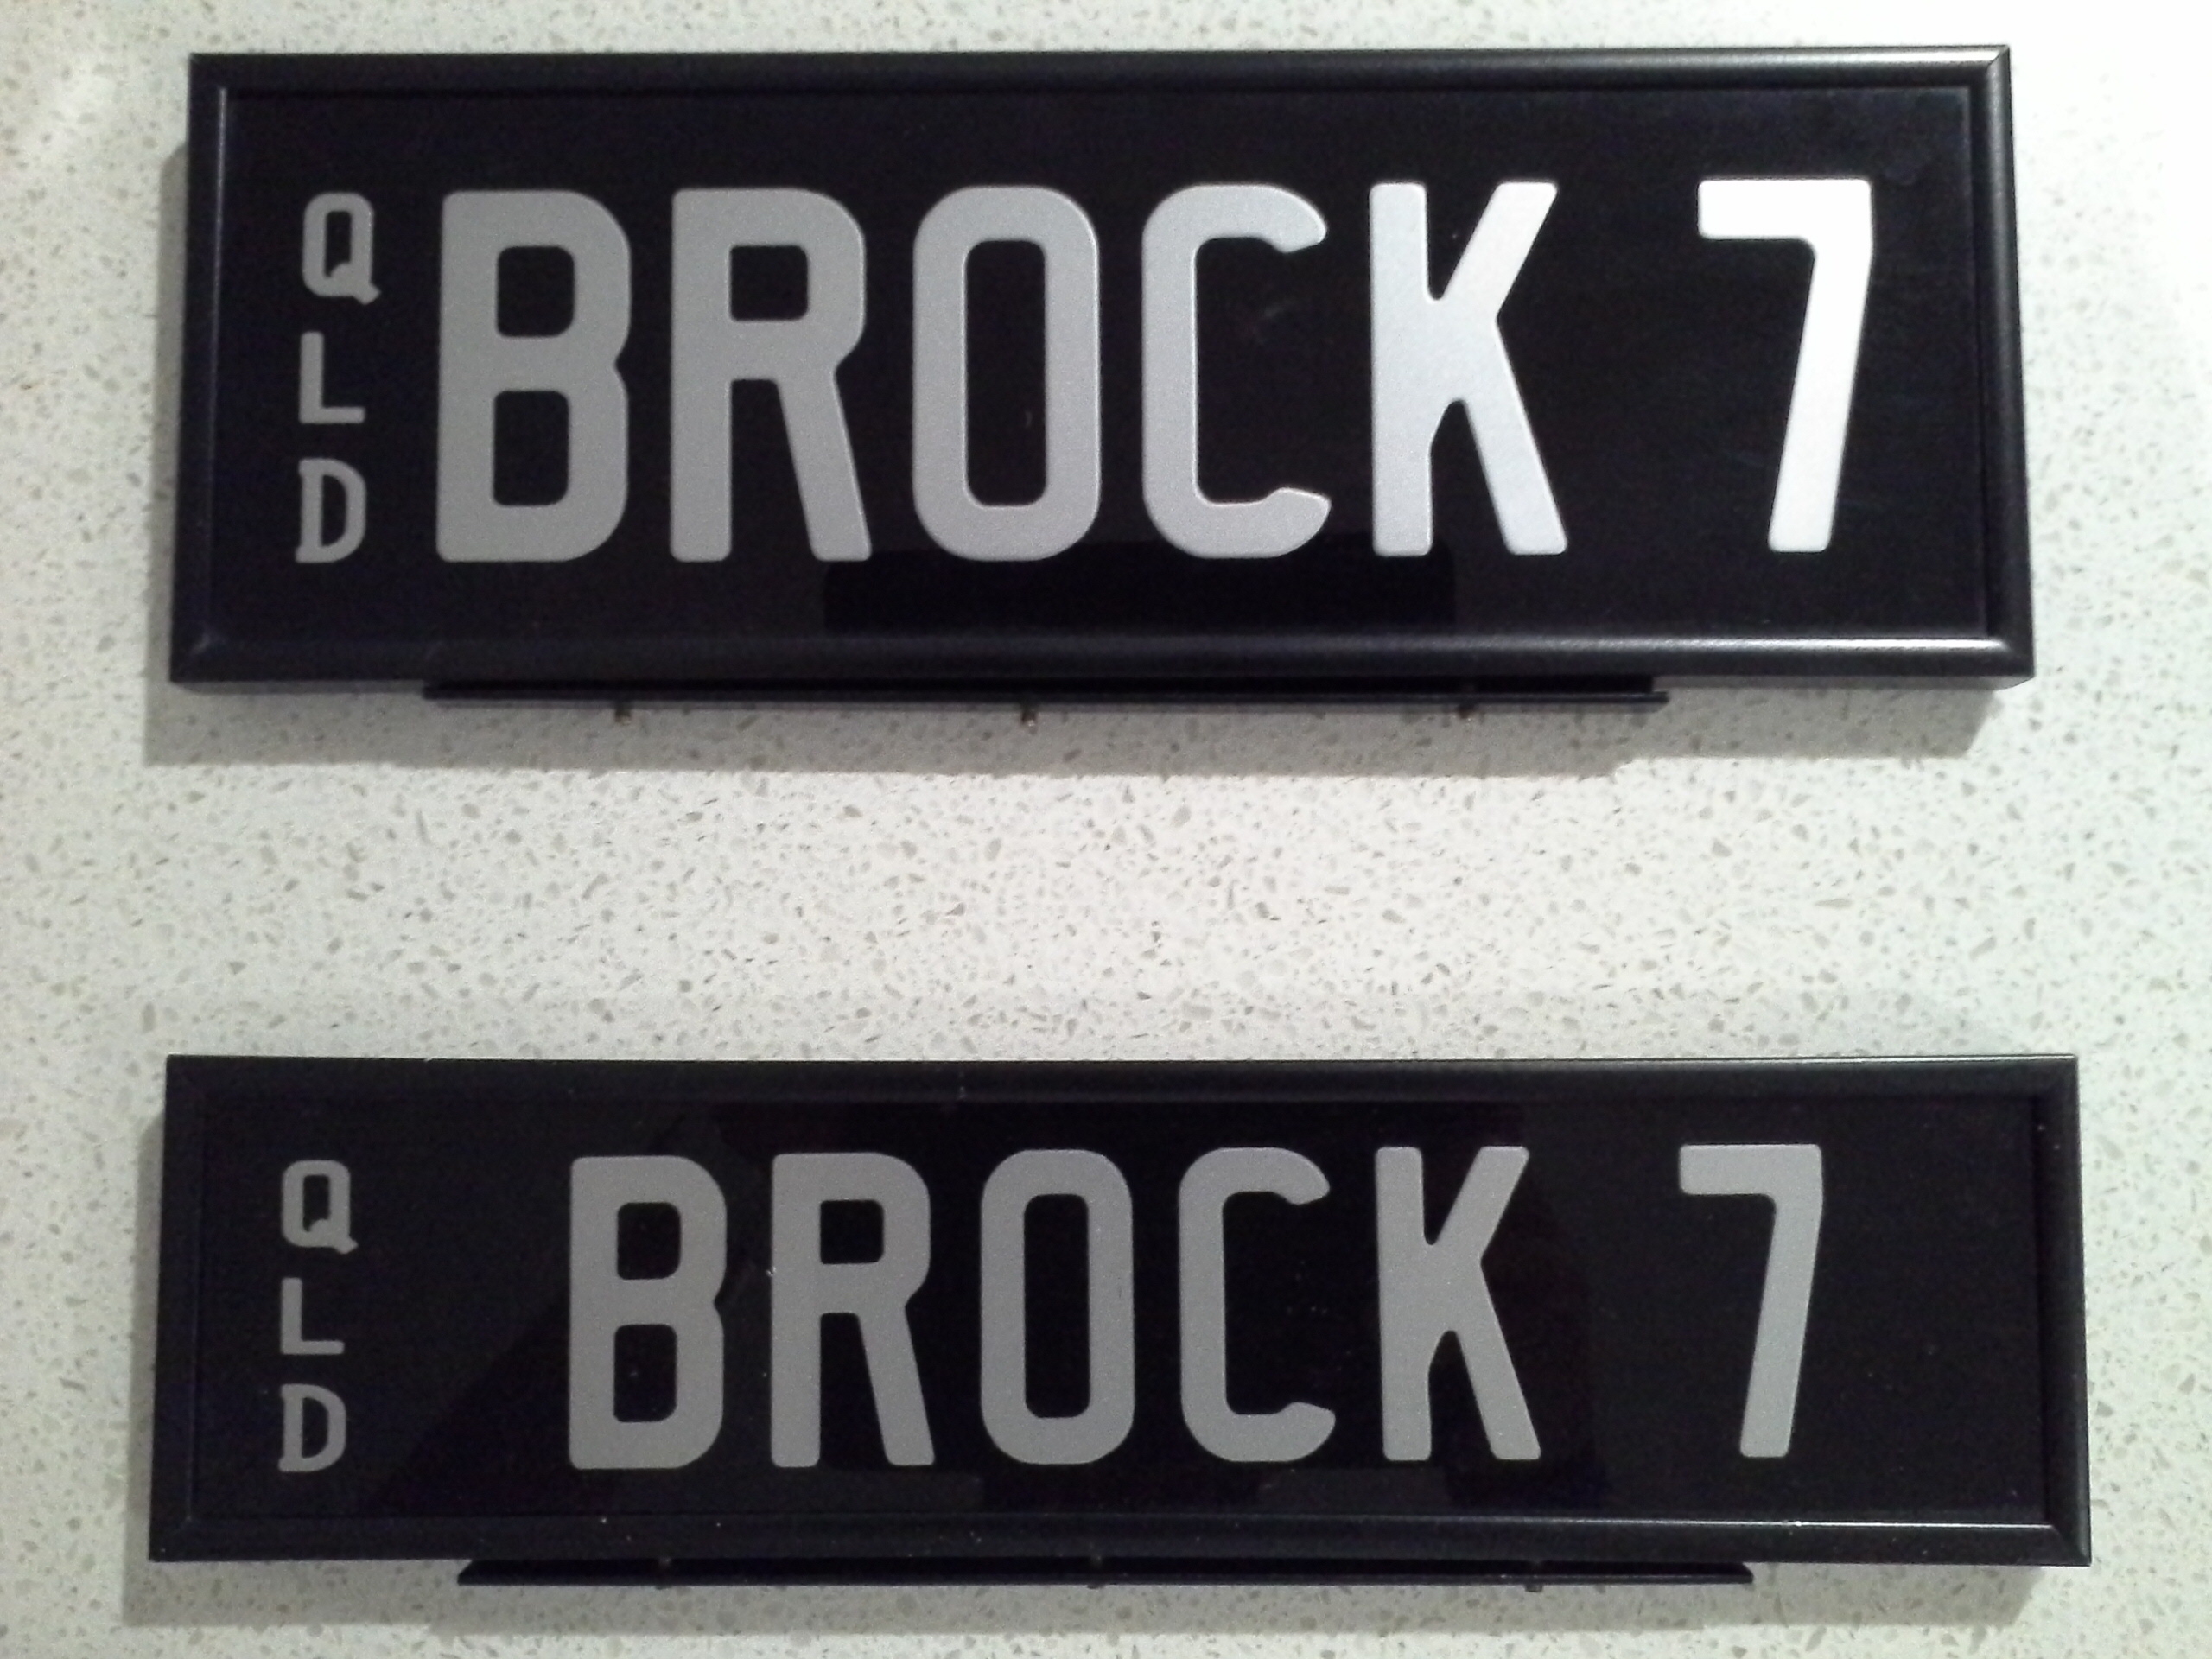 Brock 7 Number Plates